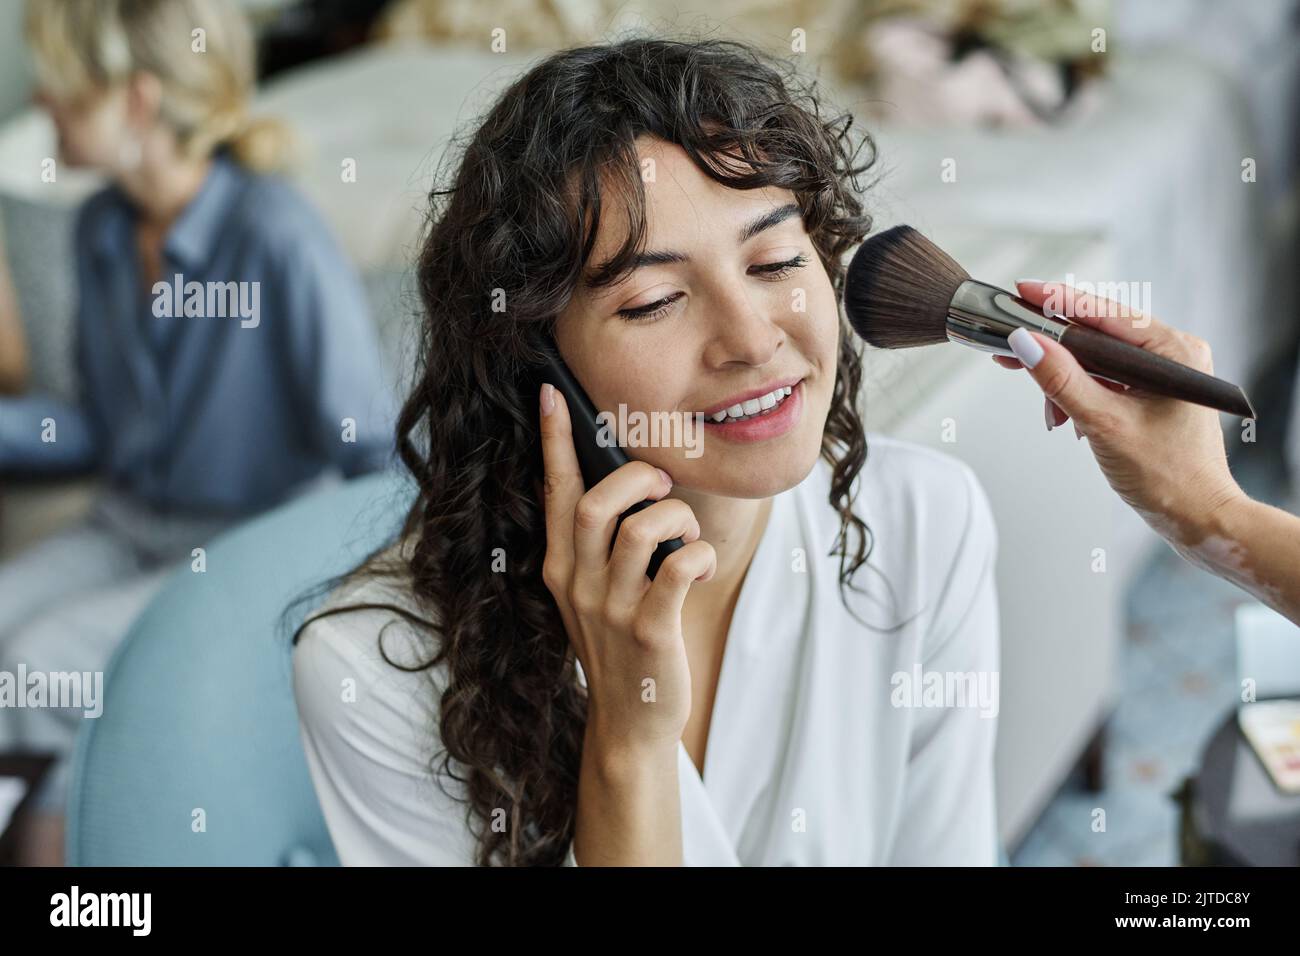 Bonne jeune mariée avec de longs cheveux ondulés foncés parlant sur le smartphone tandis que maquilleuse avec brosse appliquant de la poudre sur sa joue Banque D'Images